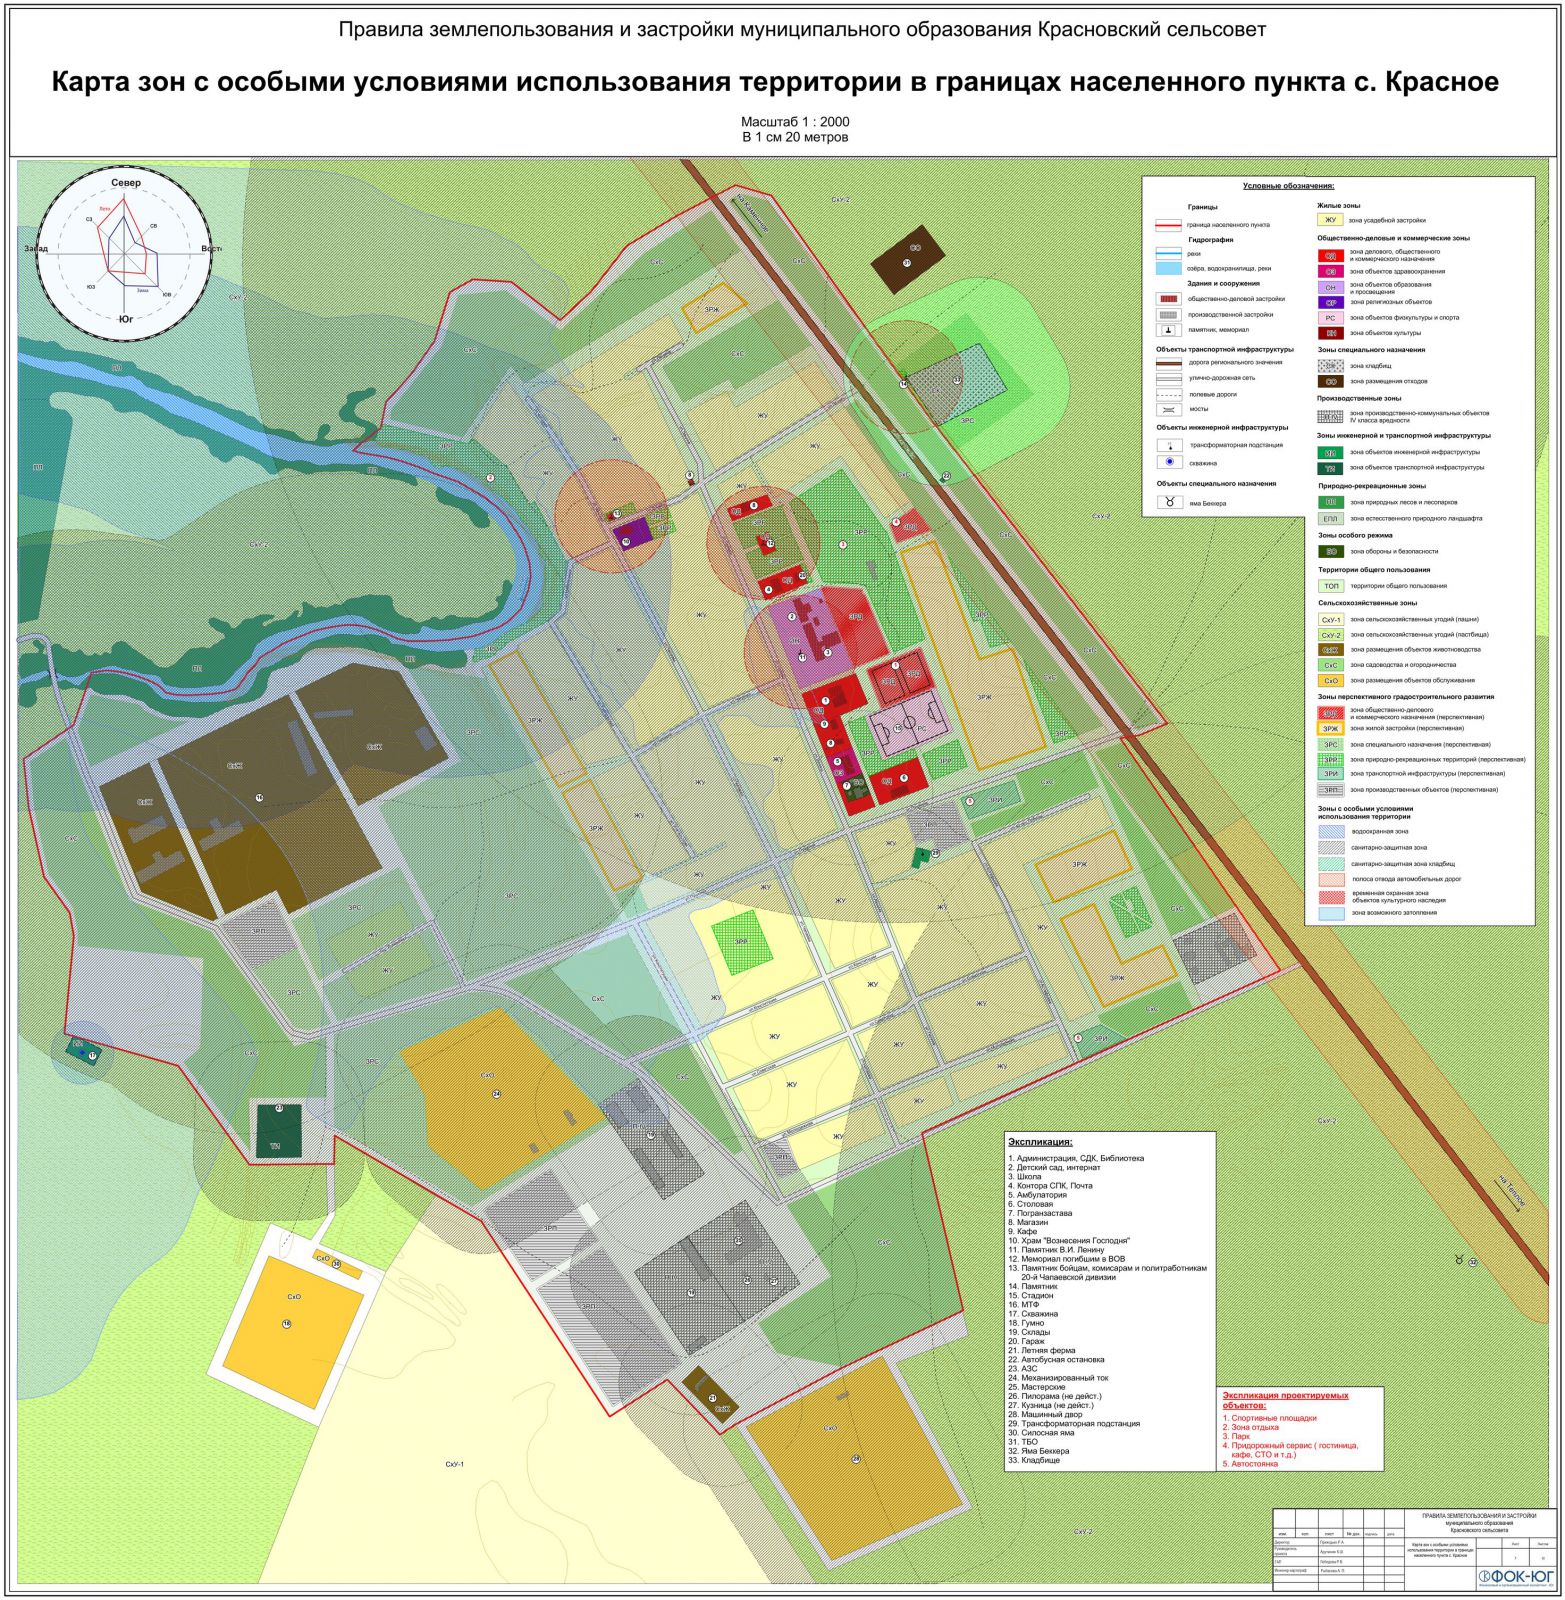 Карта зон с особыми условими использования территории в границах навеленного пункта с. Красное